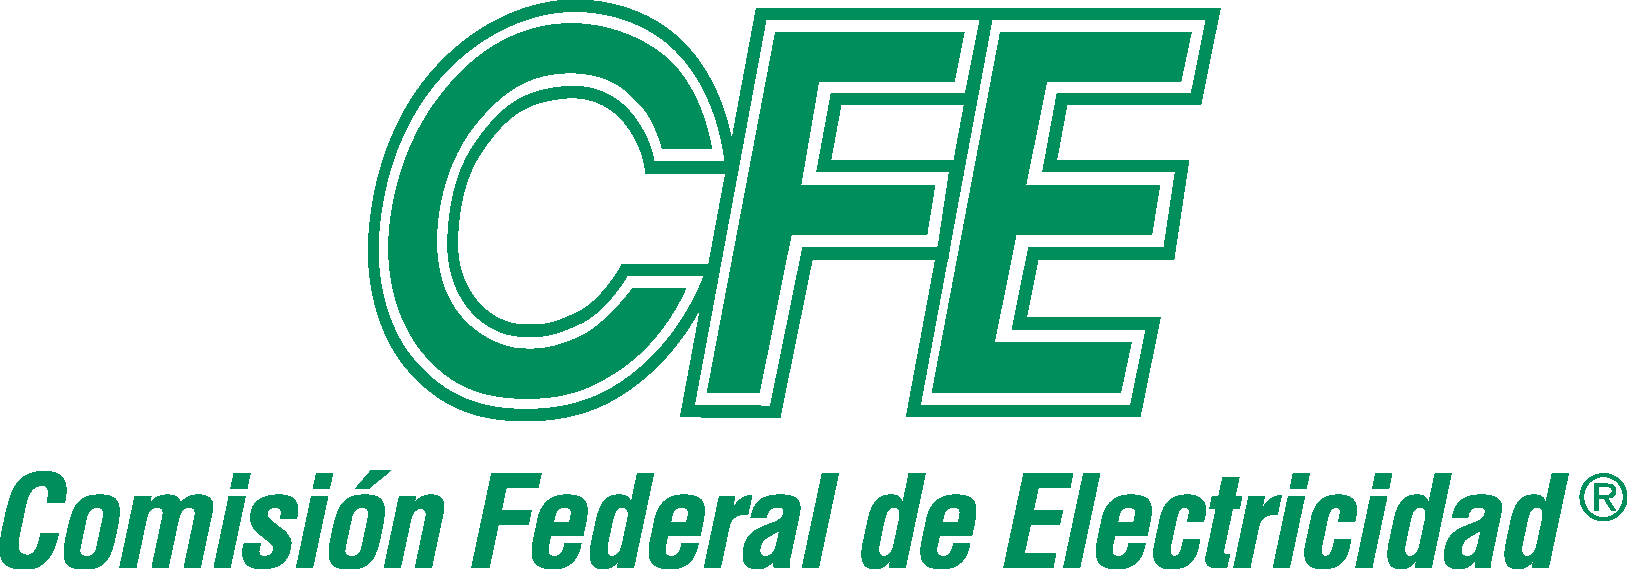 CFE Logo - Comision Federal de Electricidad